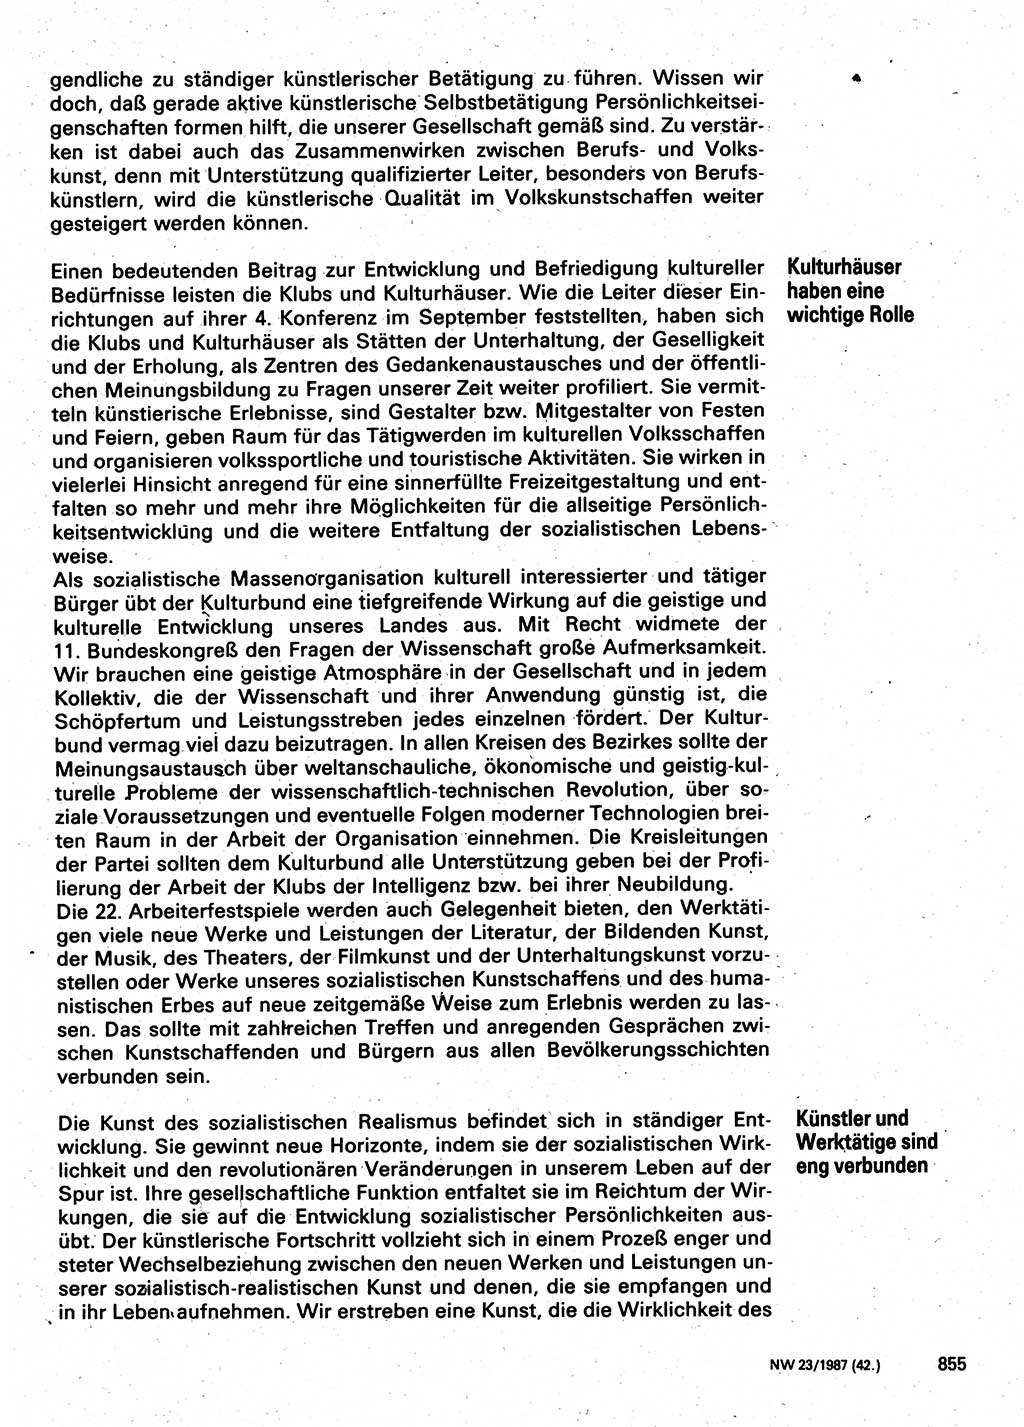 Neuer Weg (NW), Organ des Zentralkomitees (ZK) der SED (Sozialistische Einheitspartei Deutschlands) für Fragen des Parteilebens, 42. Jahrgang [Deutsche Demokratische Republik (DDR)] 1987, Seite 855 (NW ZK SED DDR 1987, S. 855)